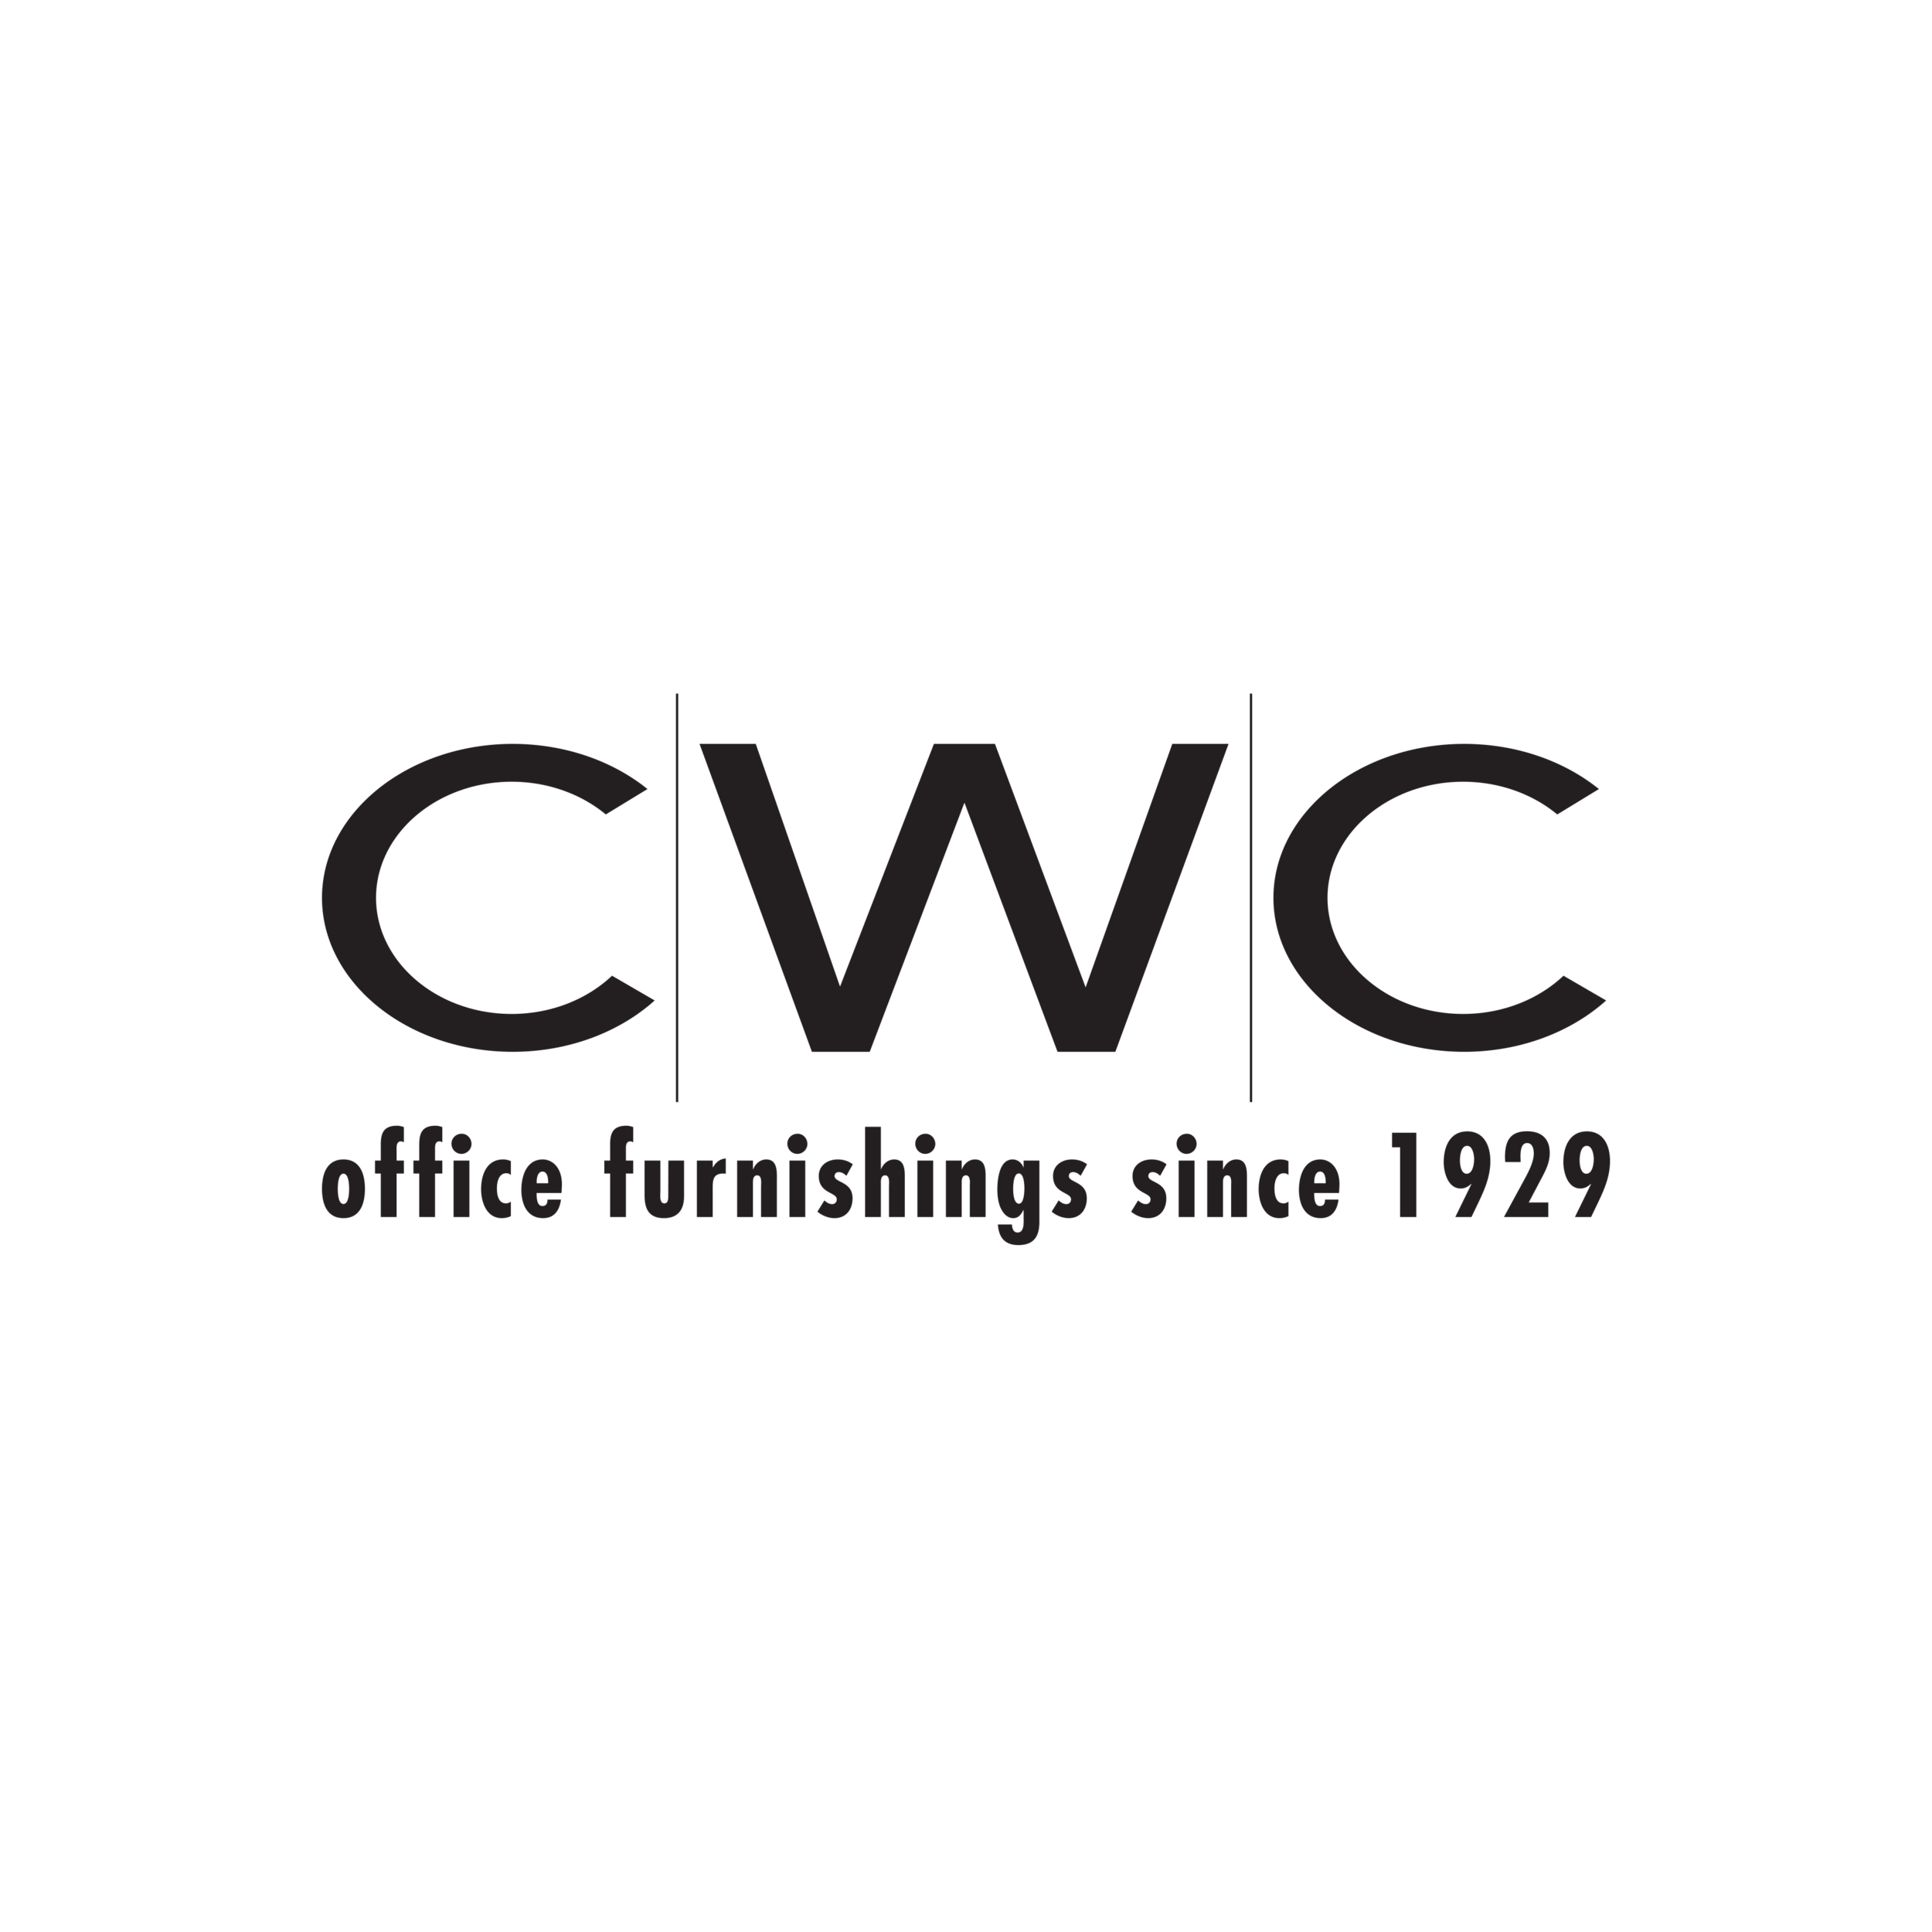 CWC Logo_2011_web.png